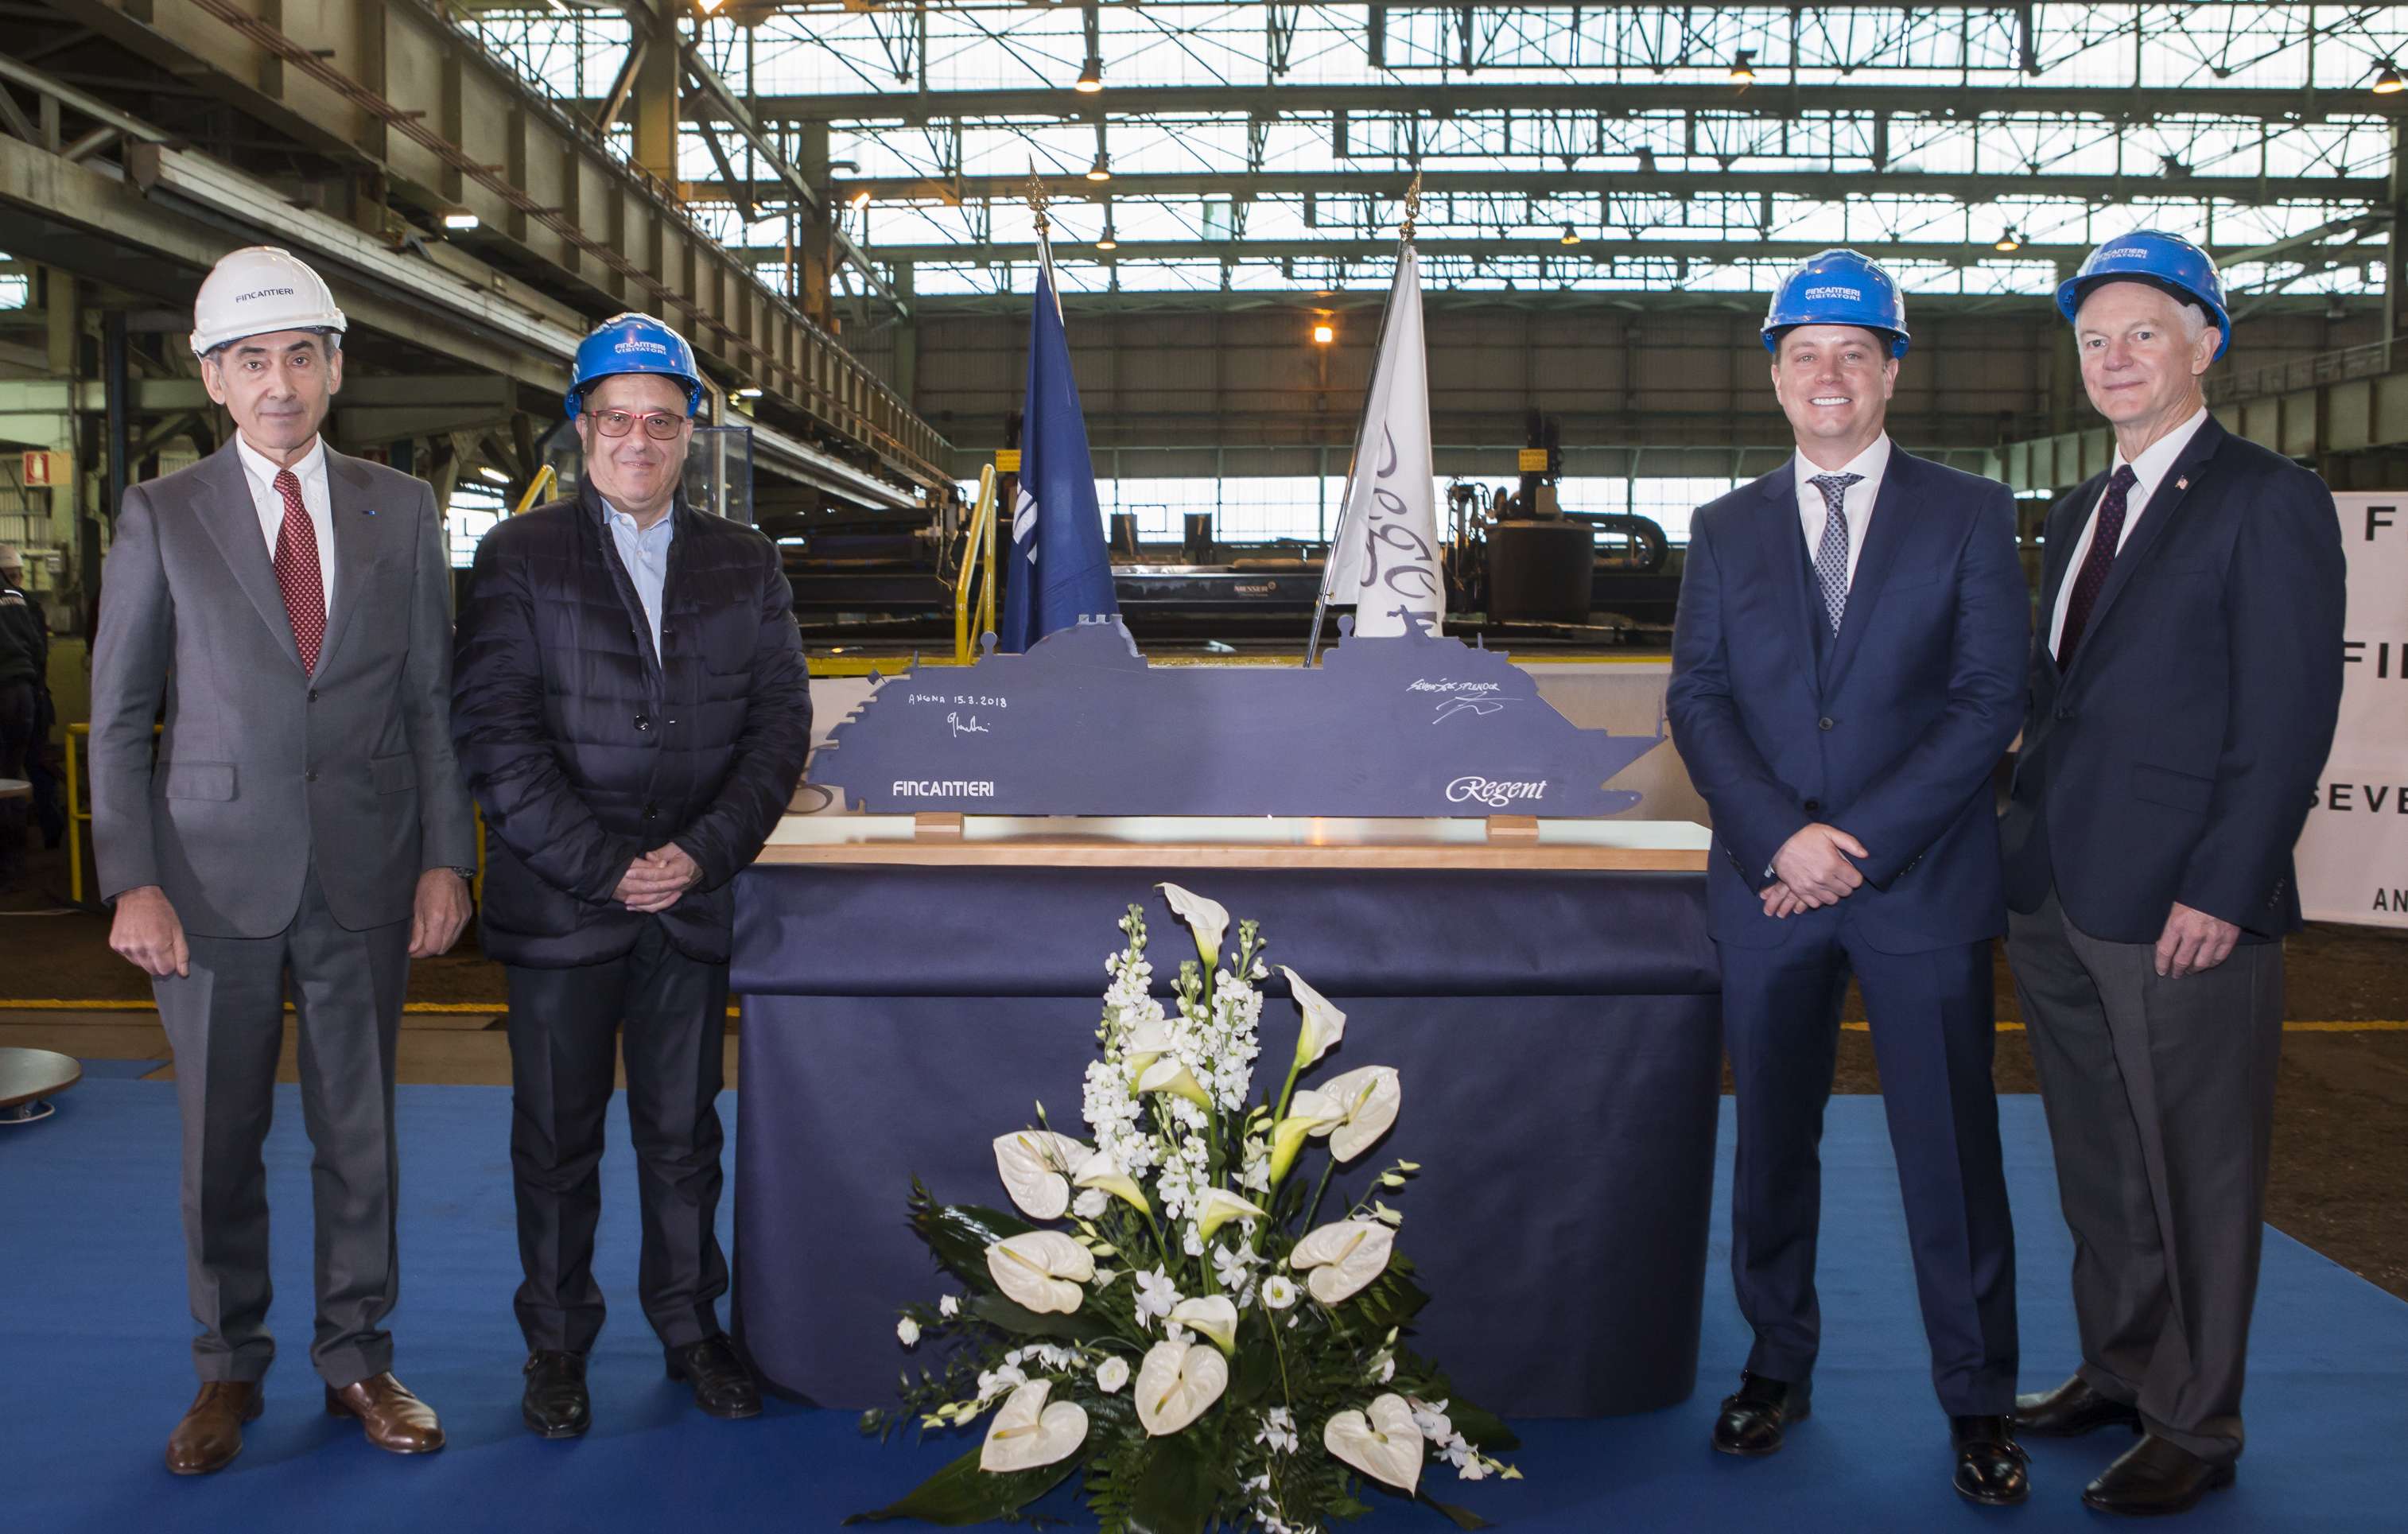 Î‘Ï€Î¿Ï„Î­Î»ÎµÏƒÎ¼Î± ÎµÎ¹ÎºÏŒÎ½Î±Ï‚ Î³Î¹Î± Regent Seven Seas Cruises cuts steel at Ancona for Seven Seas Splendor